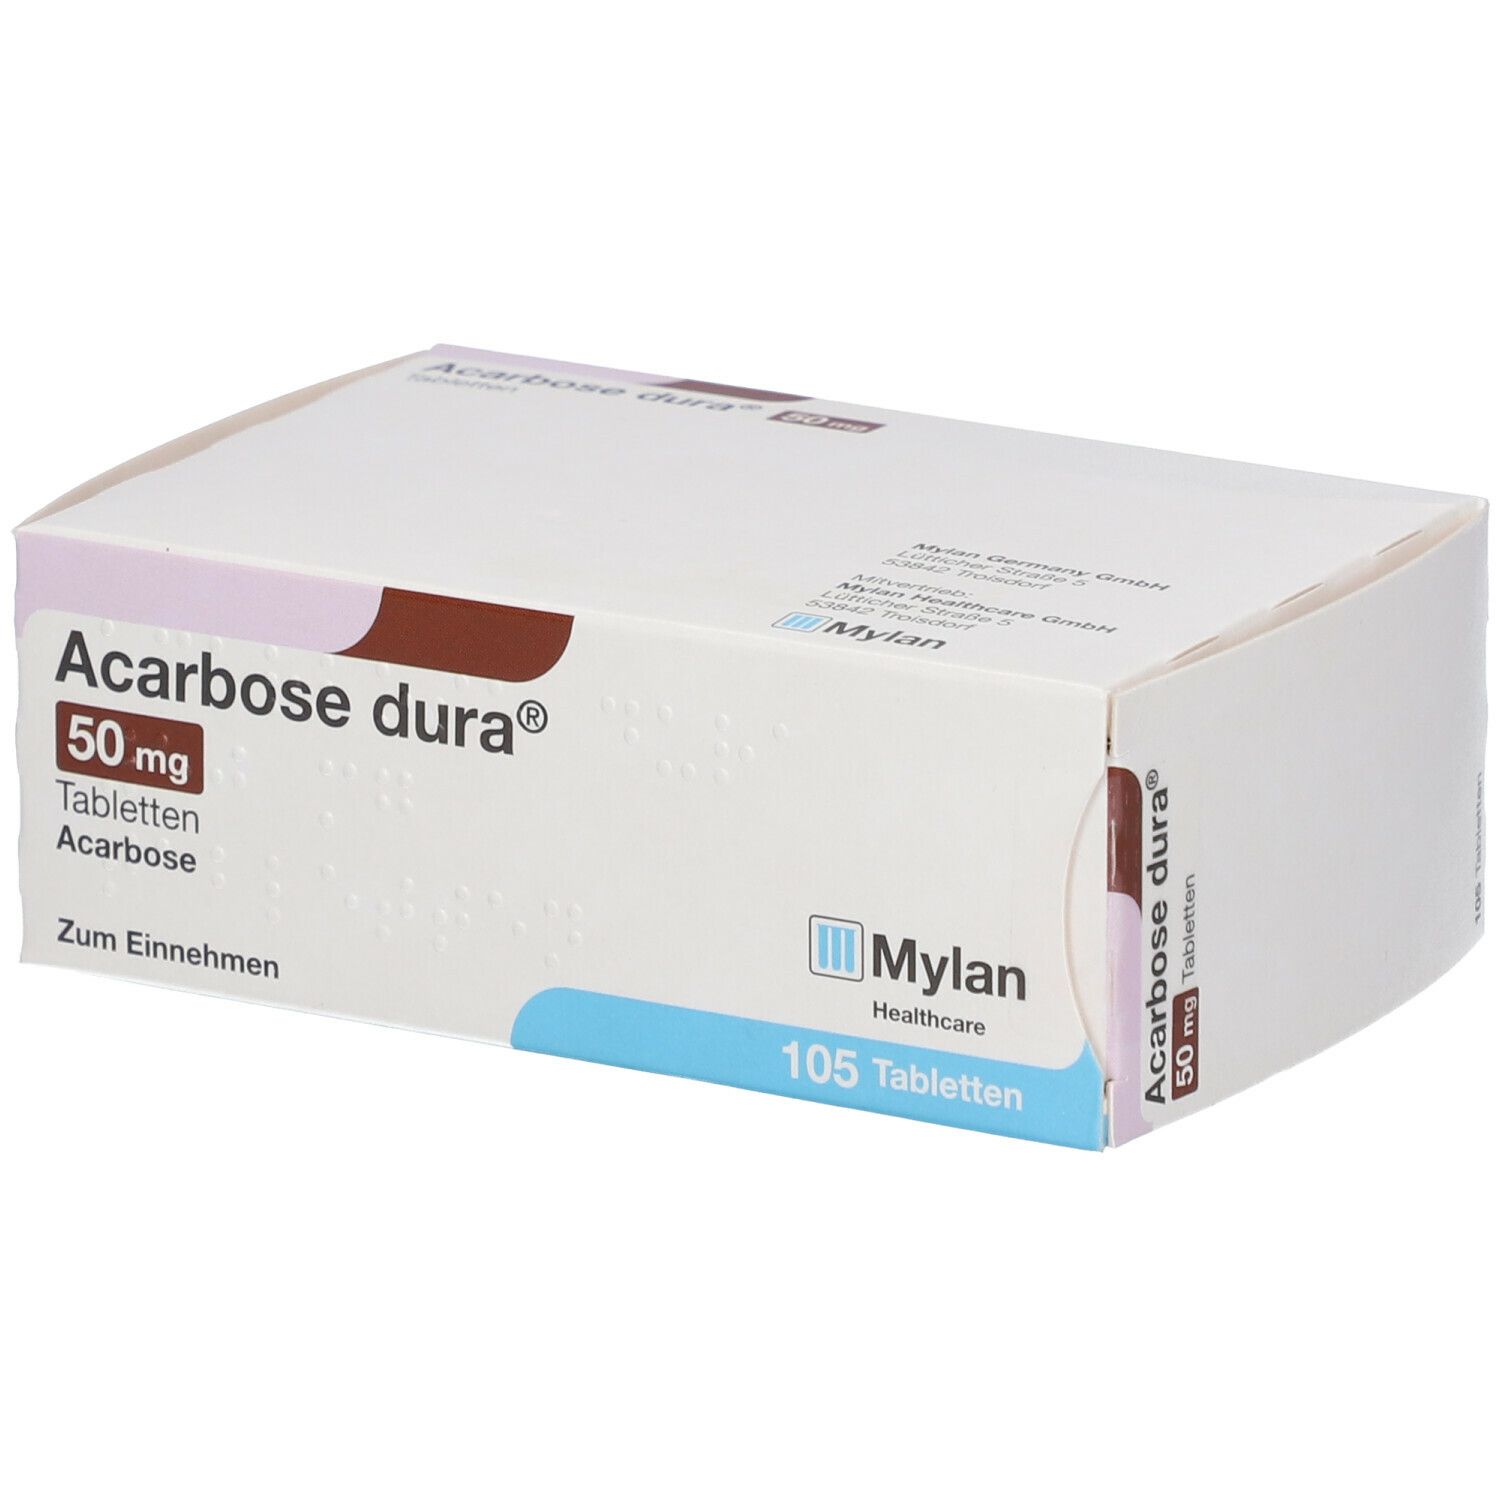 Acarbose dura® 50 mg